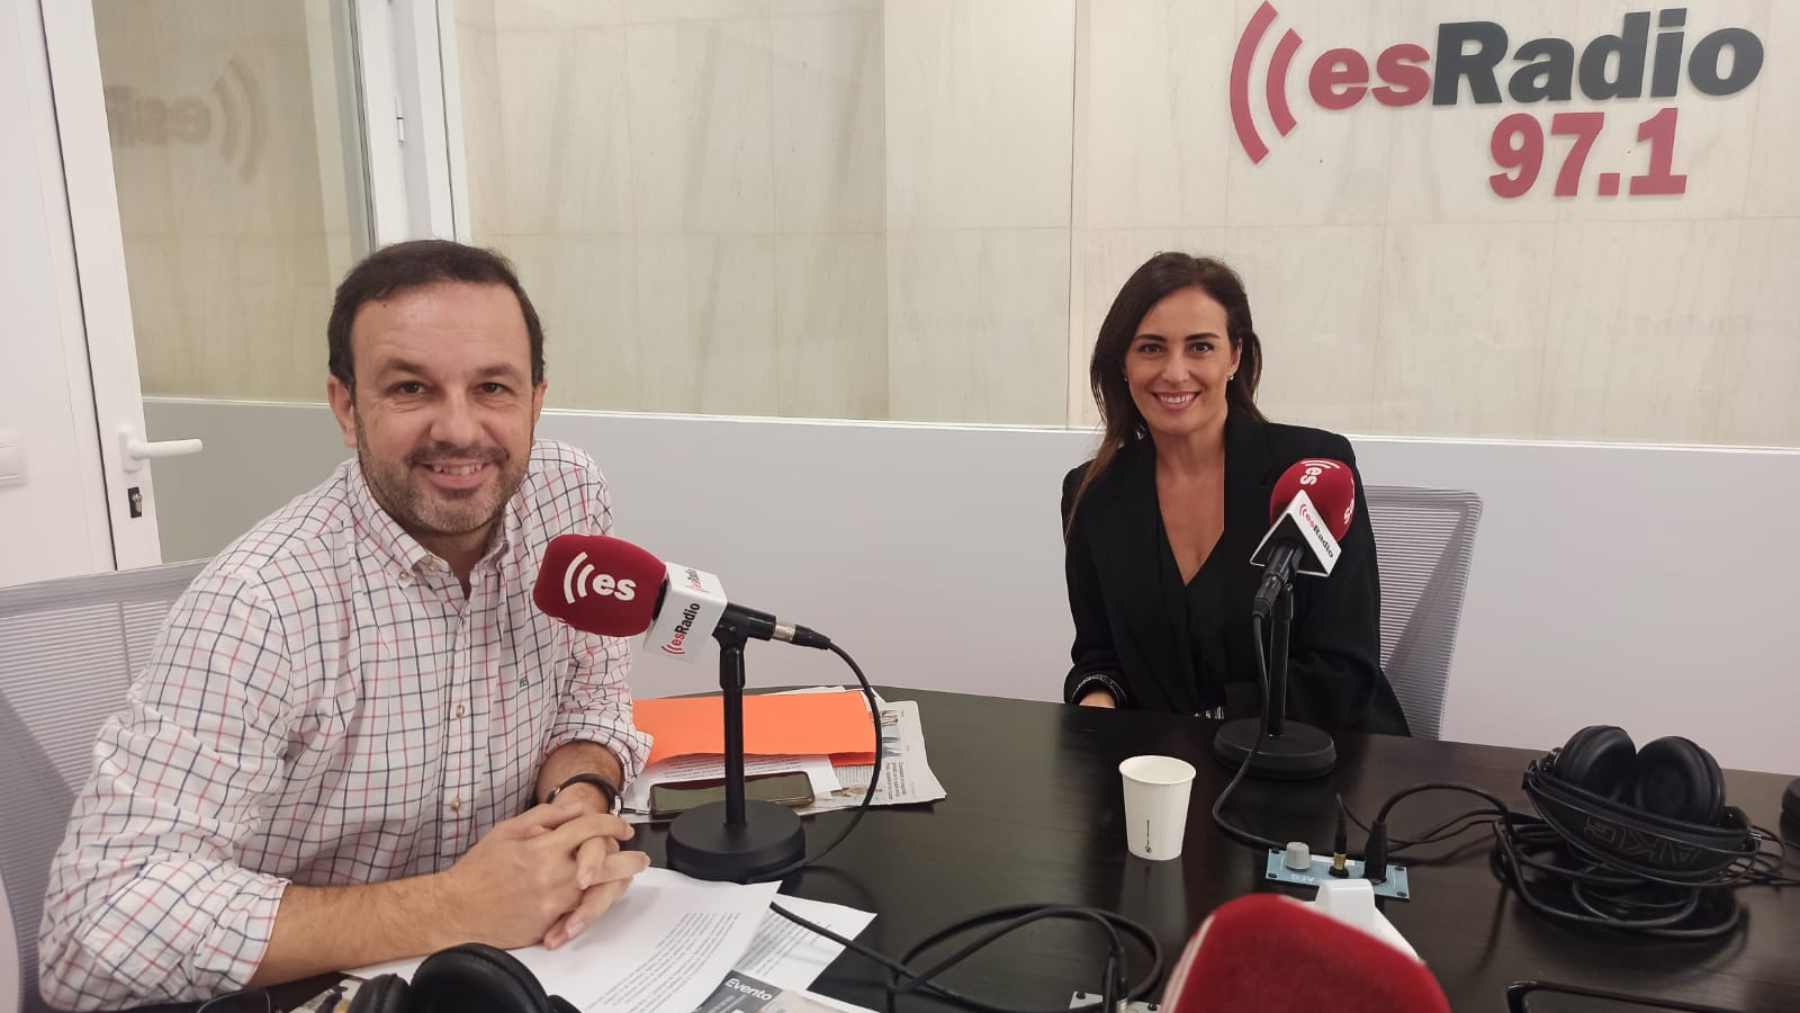 La portavoz de Vox en el Parlament balear, Idoia Ribas, con Gabriel Torrens, en la entrevista realizada en esRadio97.1.